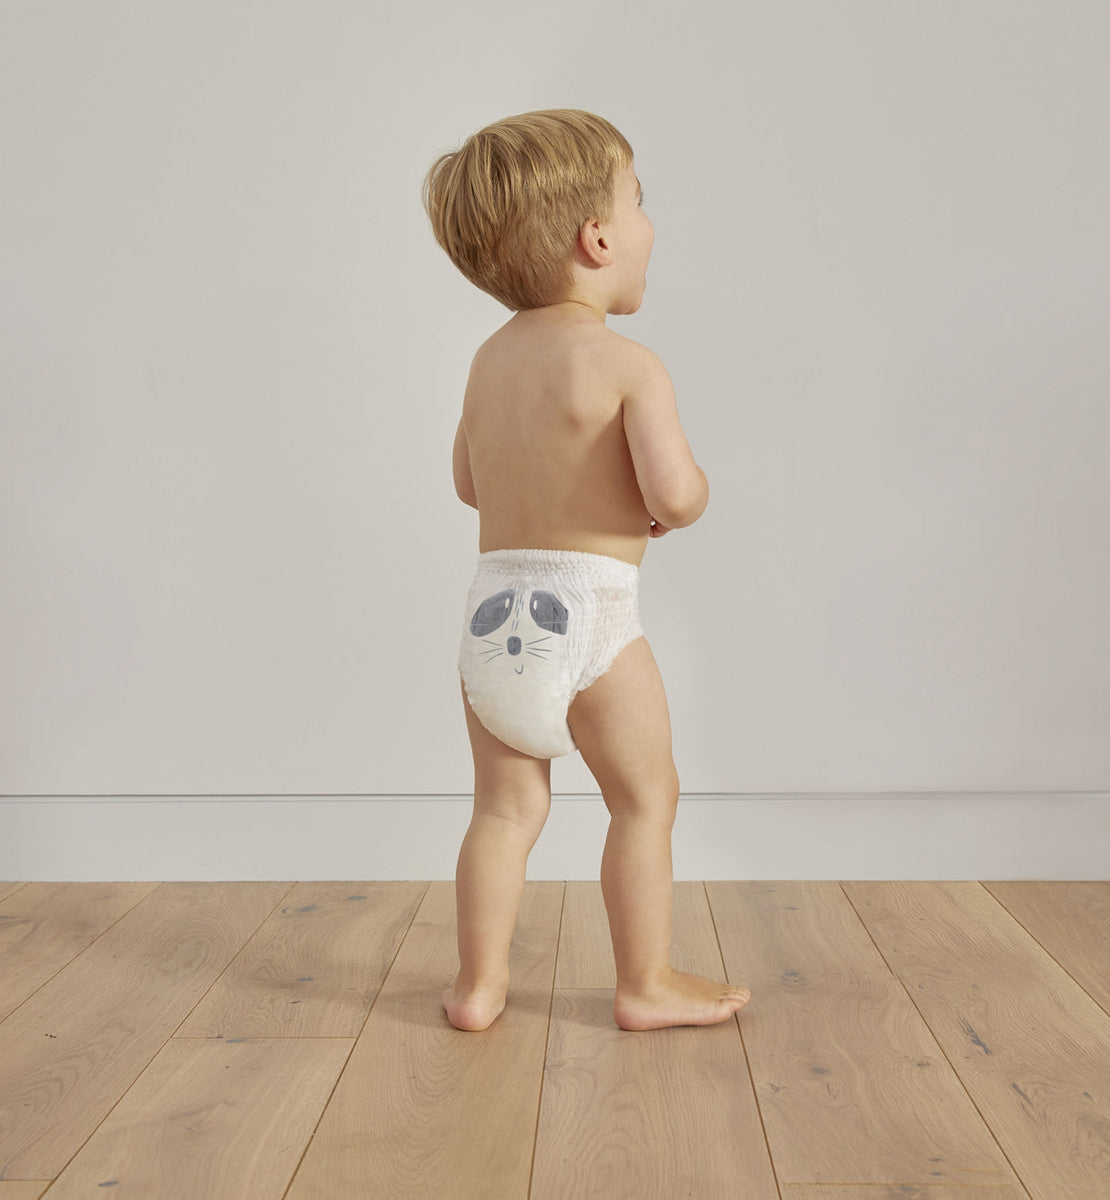 eco diaper pants – Kit & Kin ME